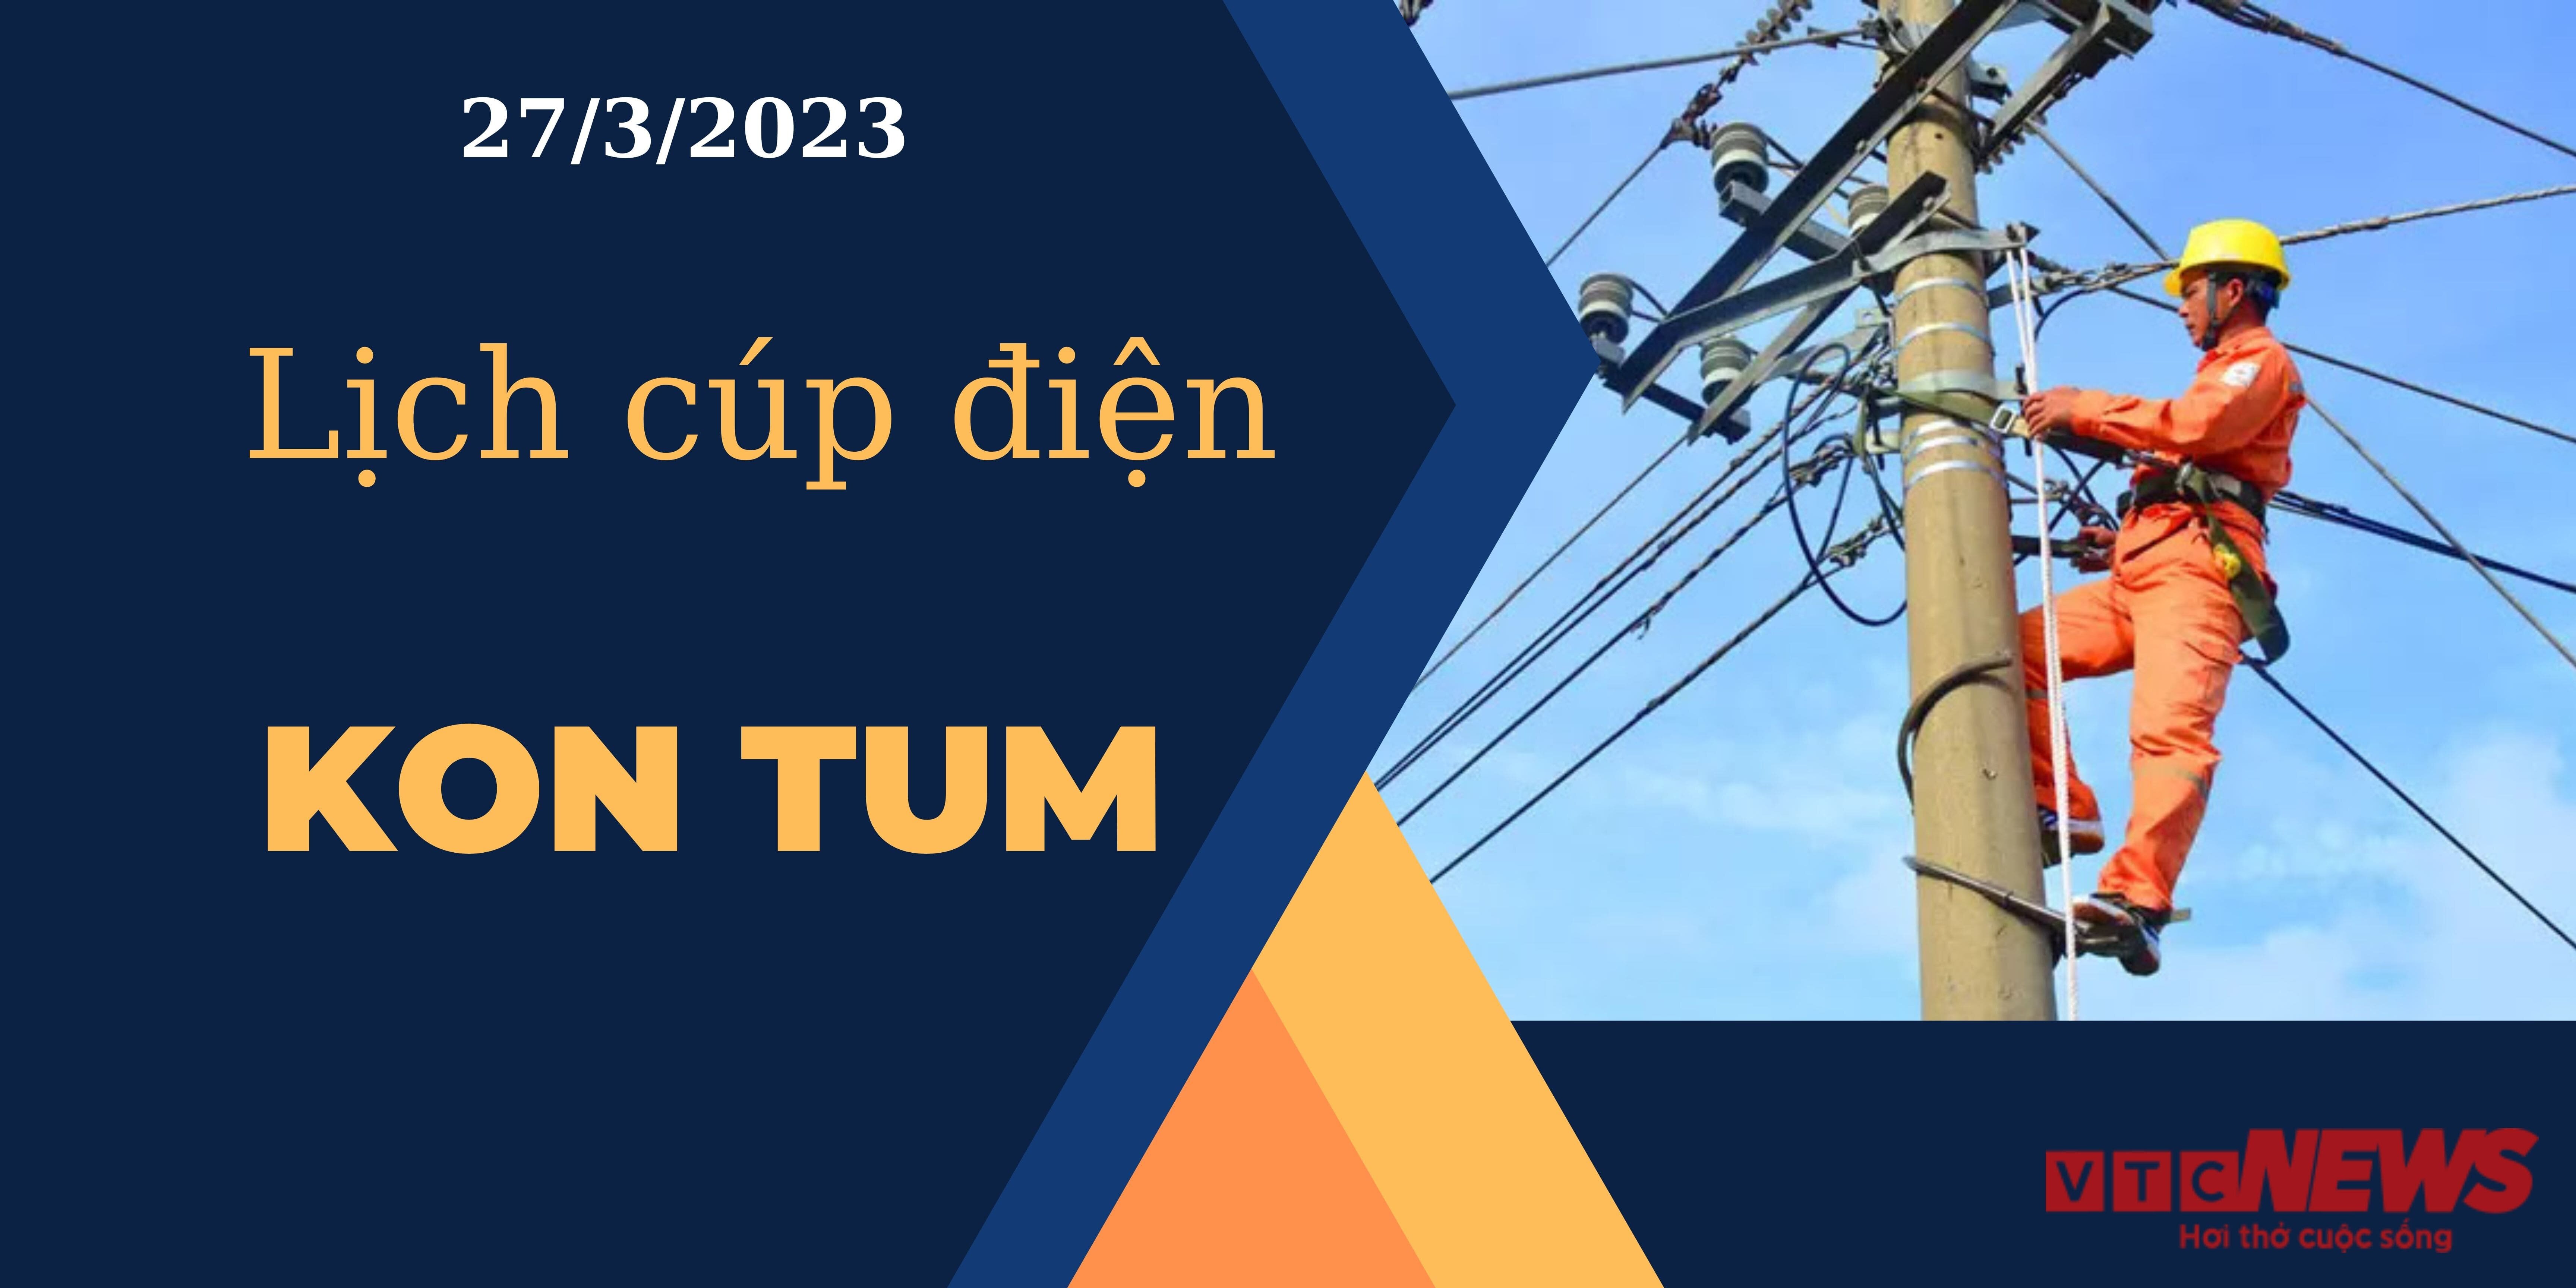 Lịch cúp điện hôm nay tại Kon Tum ngày 27/03/2023 - 1